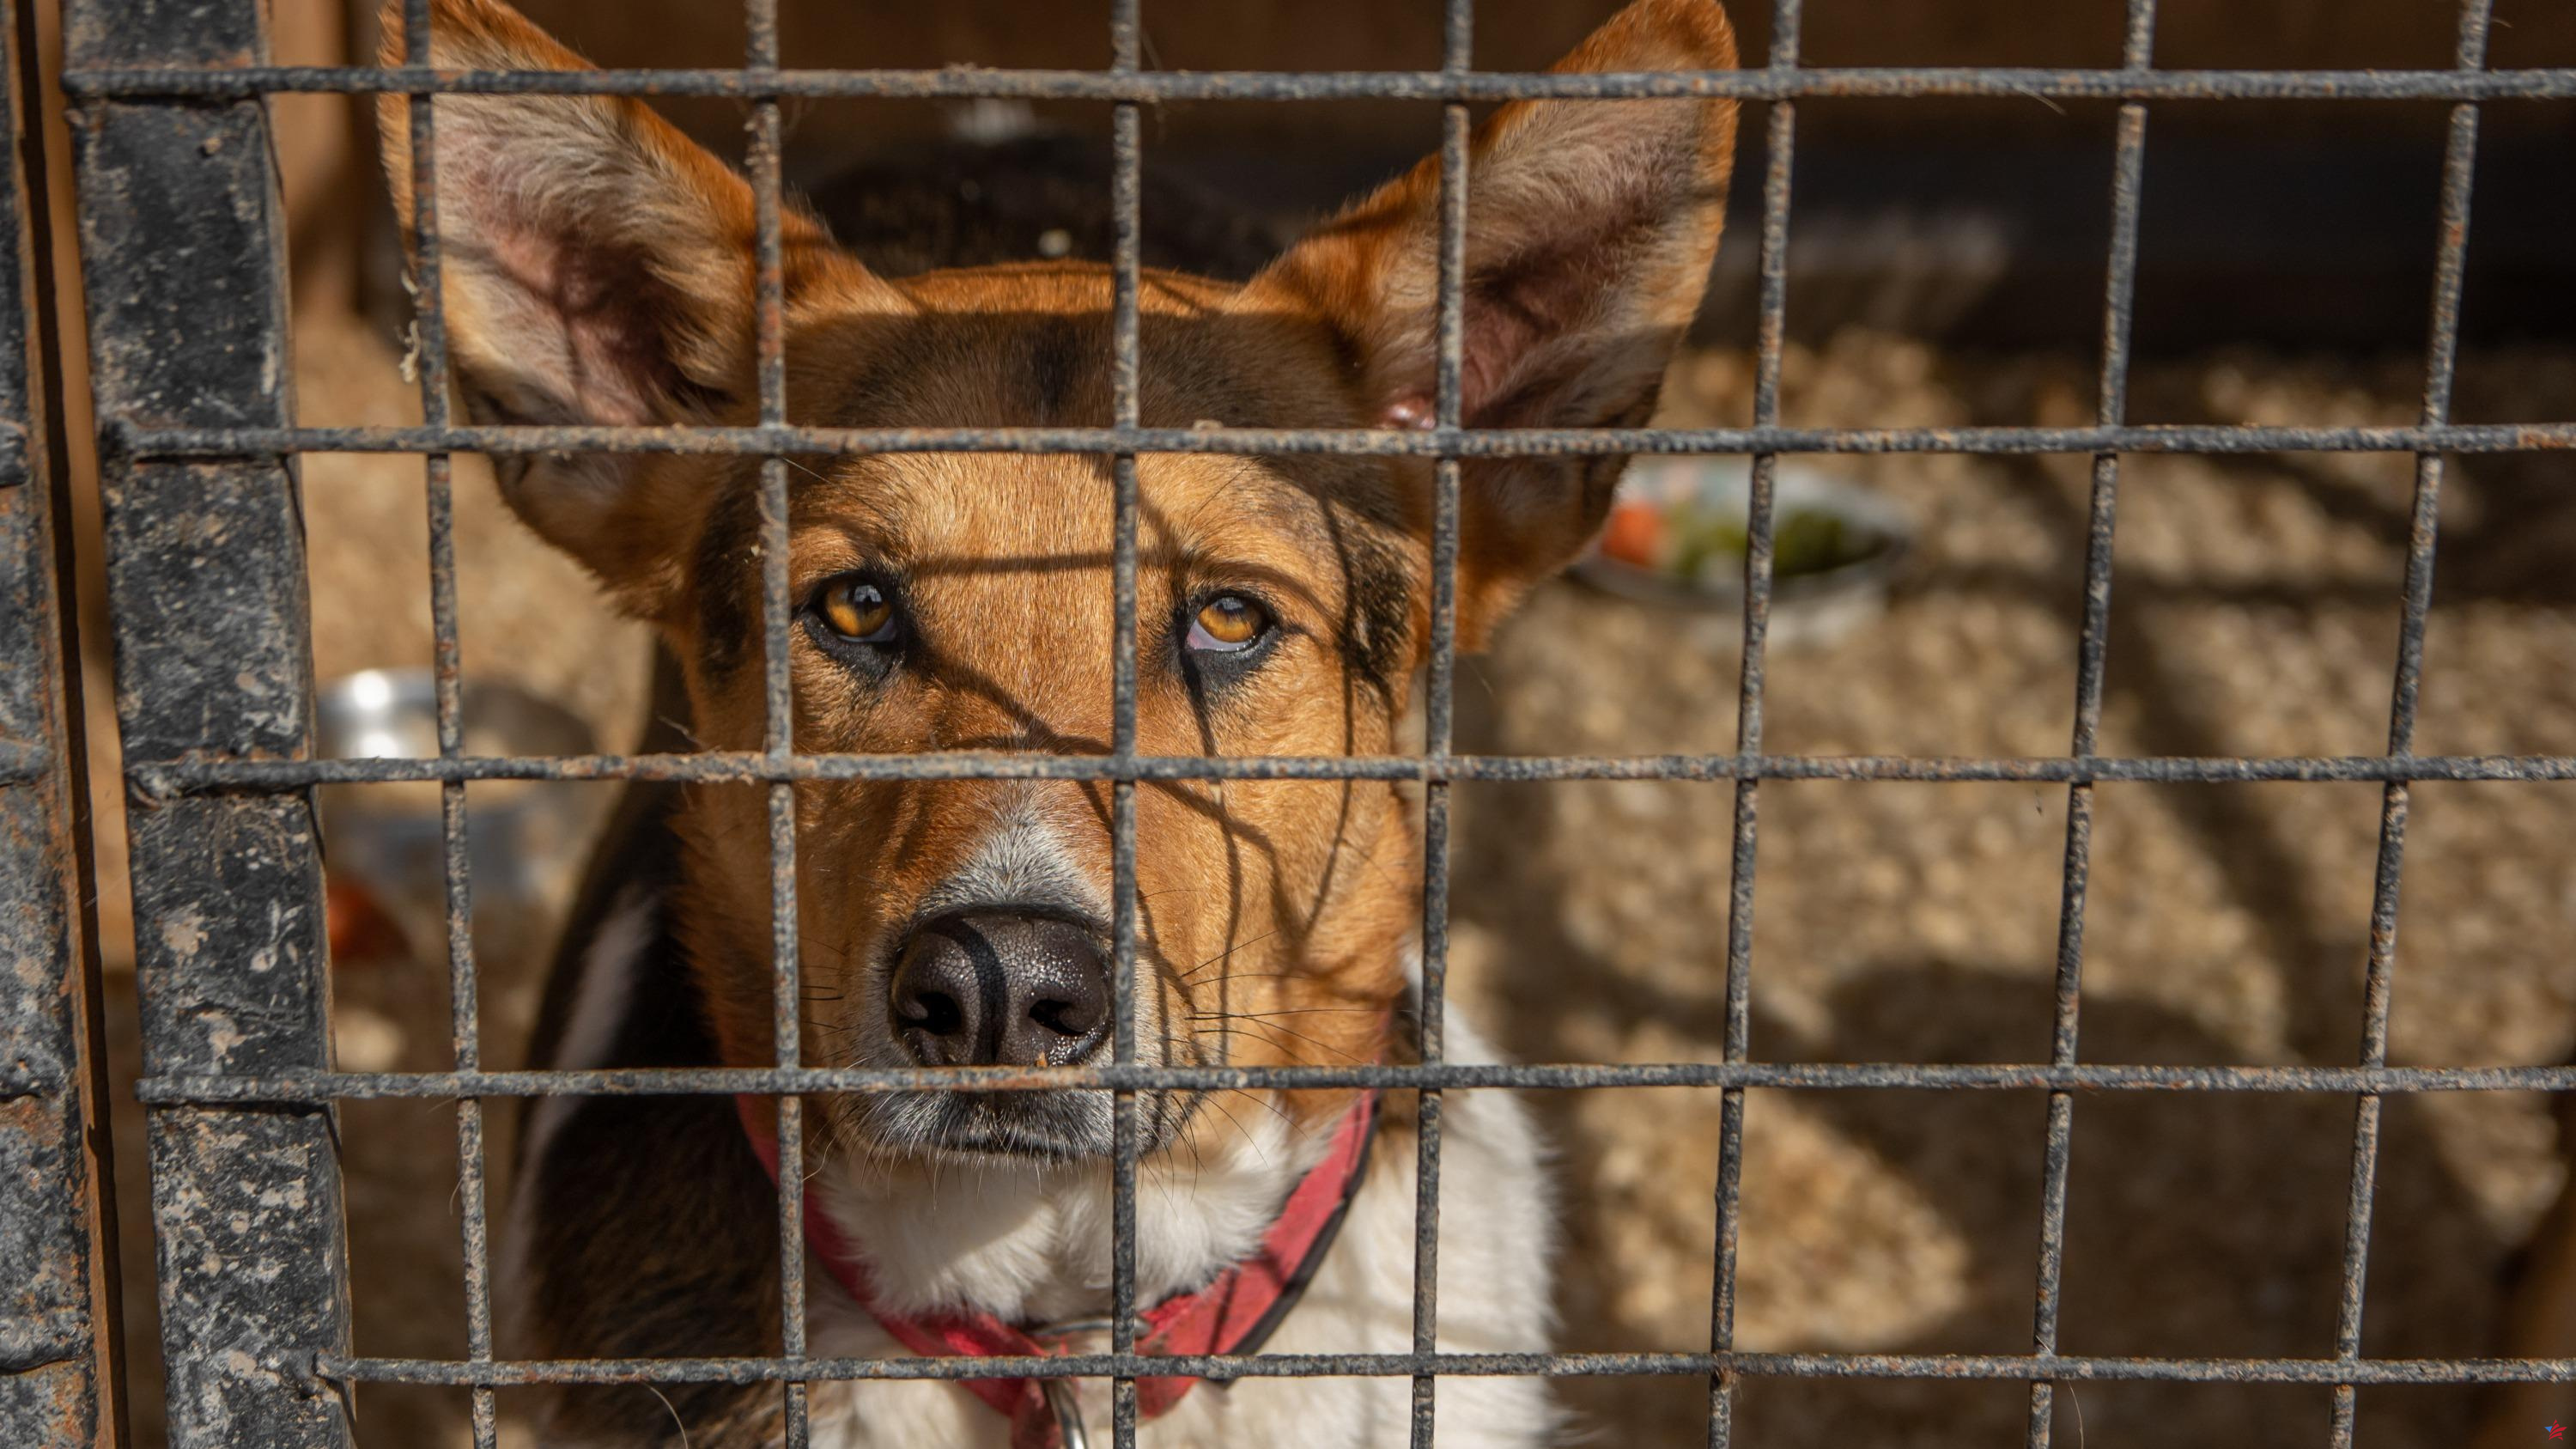 Marsella: se exigen hasta 8 meses de prisión suspendida contra propietarios de animales “negligentes”